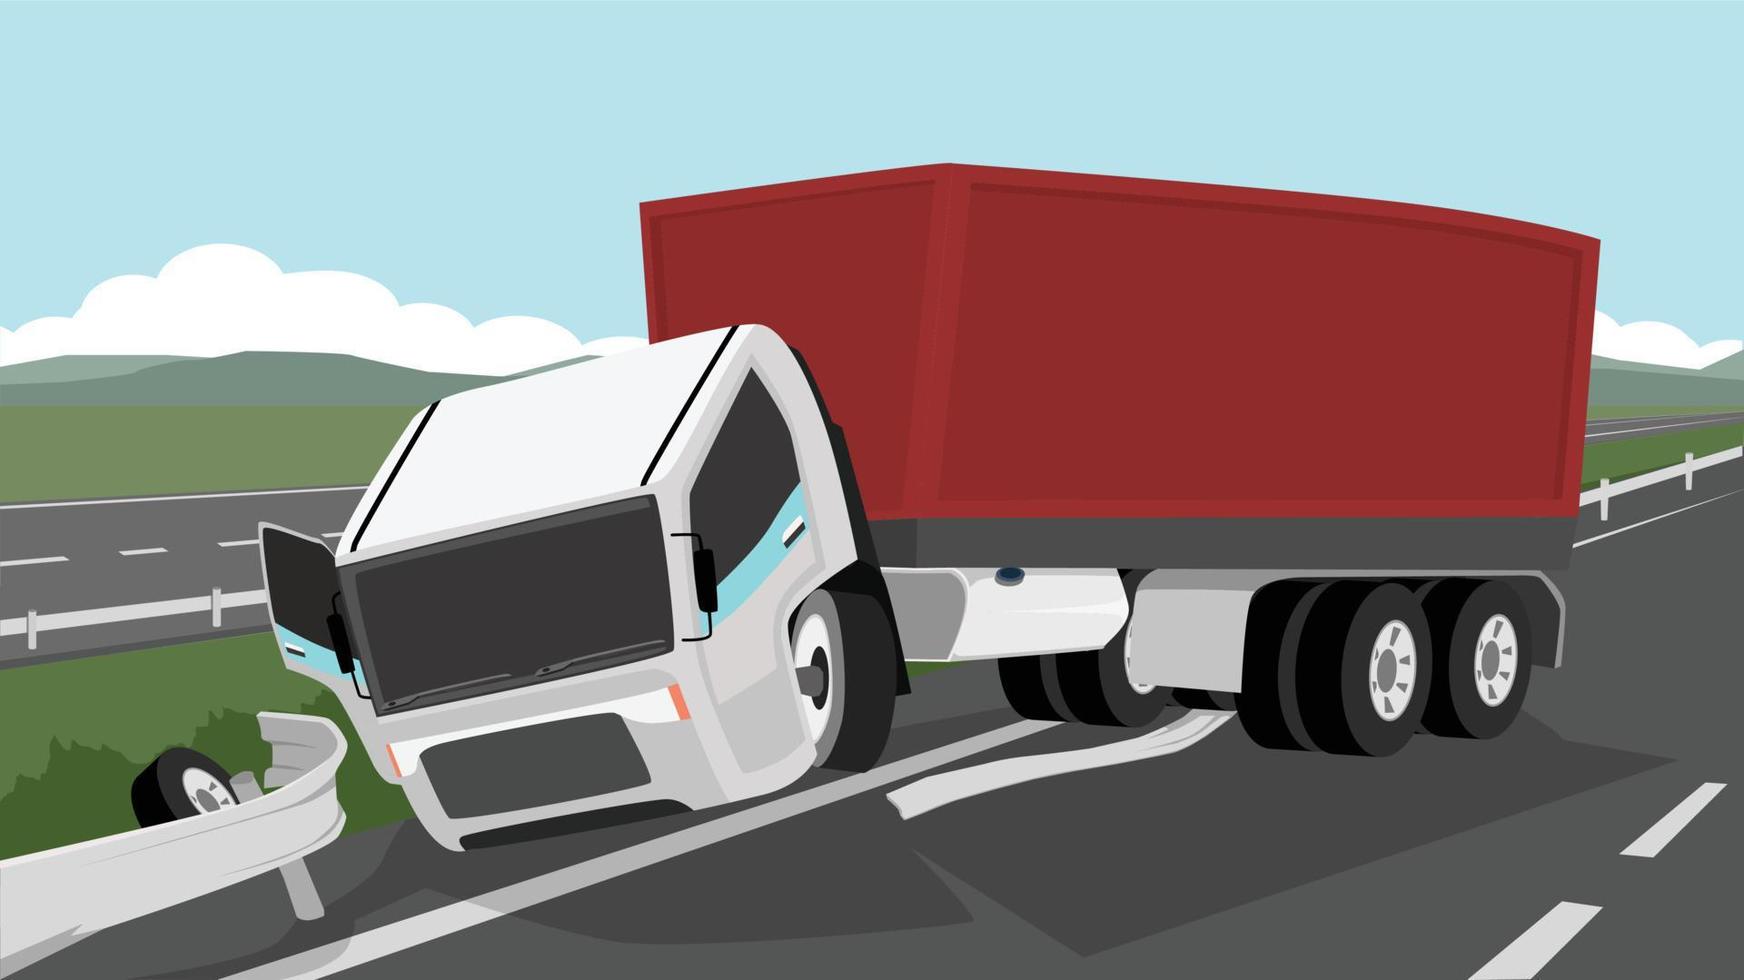 Container-LKW-Unfall. Kopf eines am Straßenrand fahrenden Autos. Geparkter LKW auf dem Rasen mit beschädigter Barrikade. Asphaltstraßen durch ländliche Gebiete. ferne berge unter blauem himmel vektor